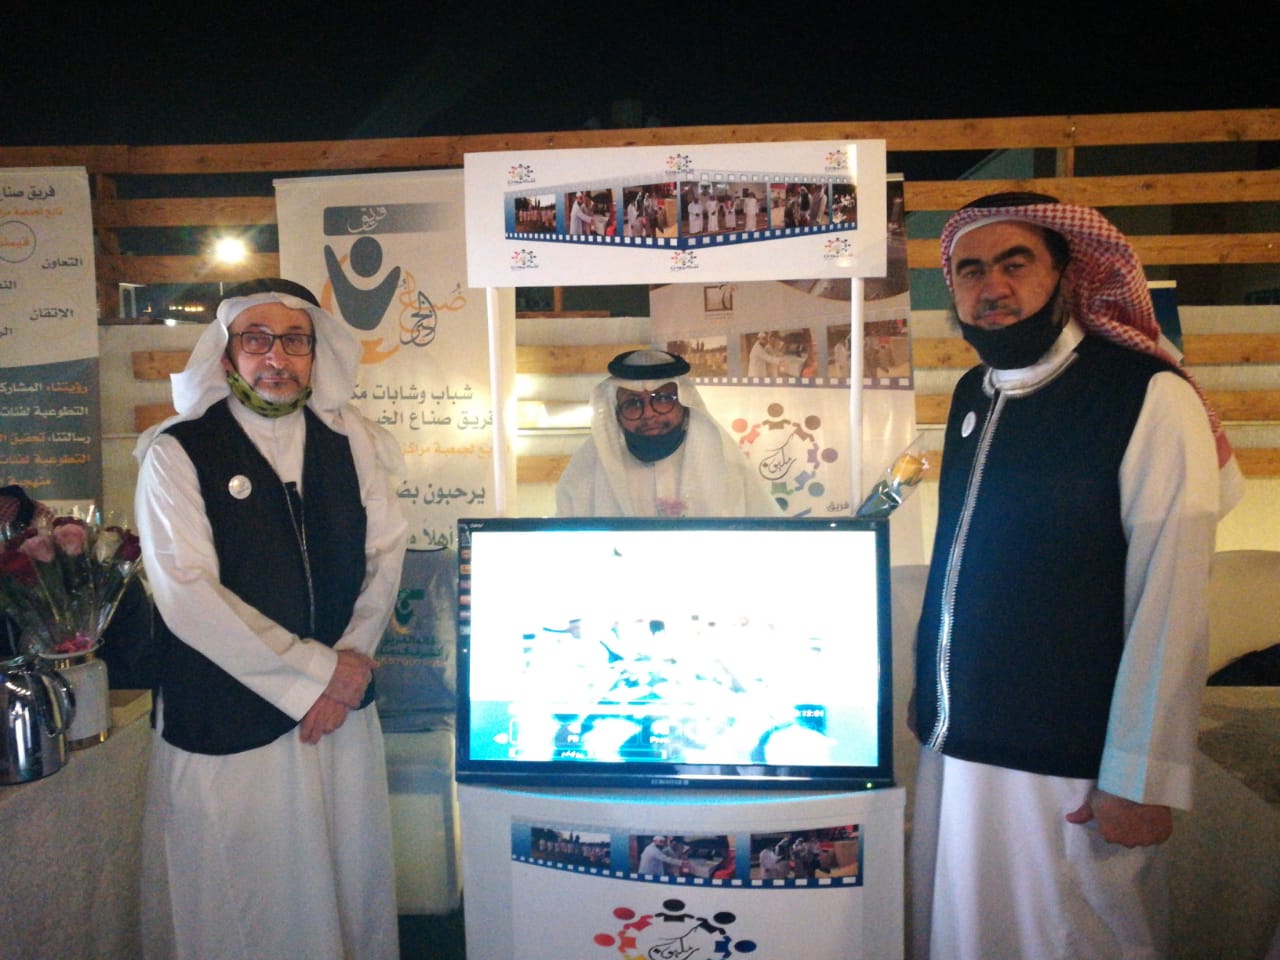 فريق مكيون يشارك في ملتقى اليوم السعودي العالمي للتطوع 2020